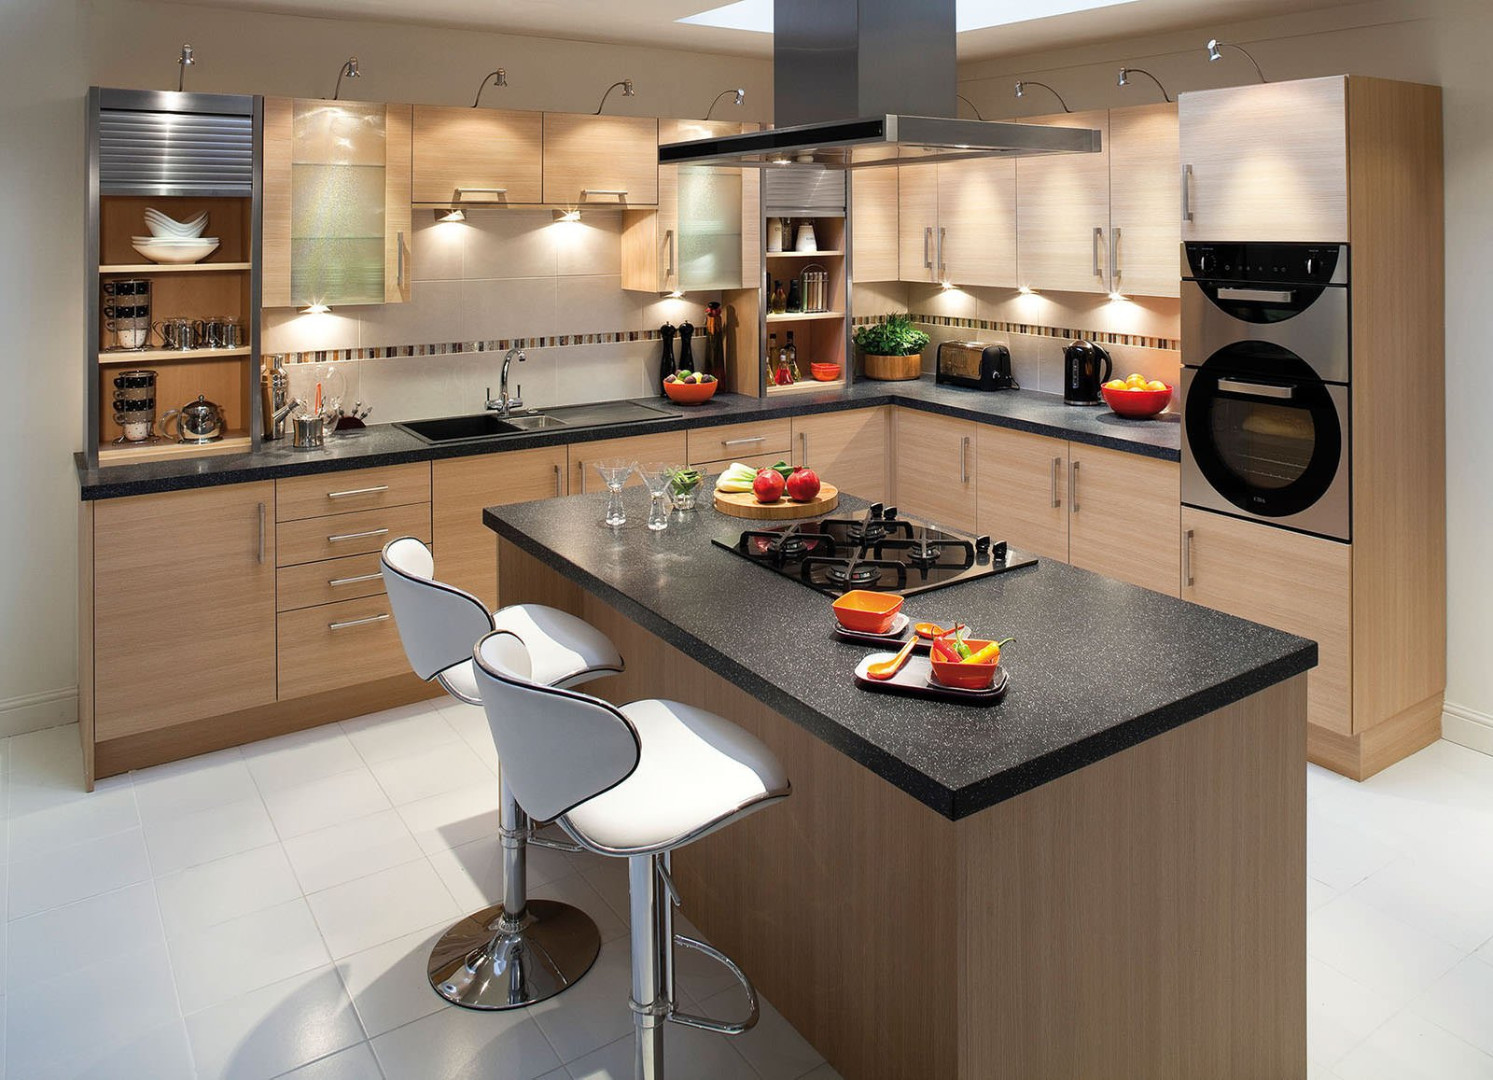 Кухня в частном доме: самые правильные варианты обустройства кухни (135 фото)варианты планировки и дизайна